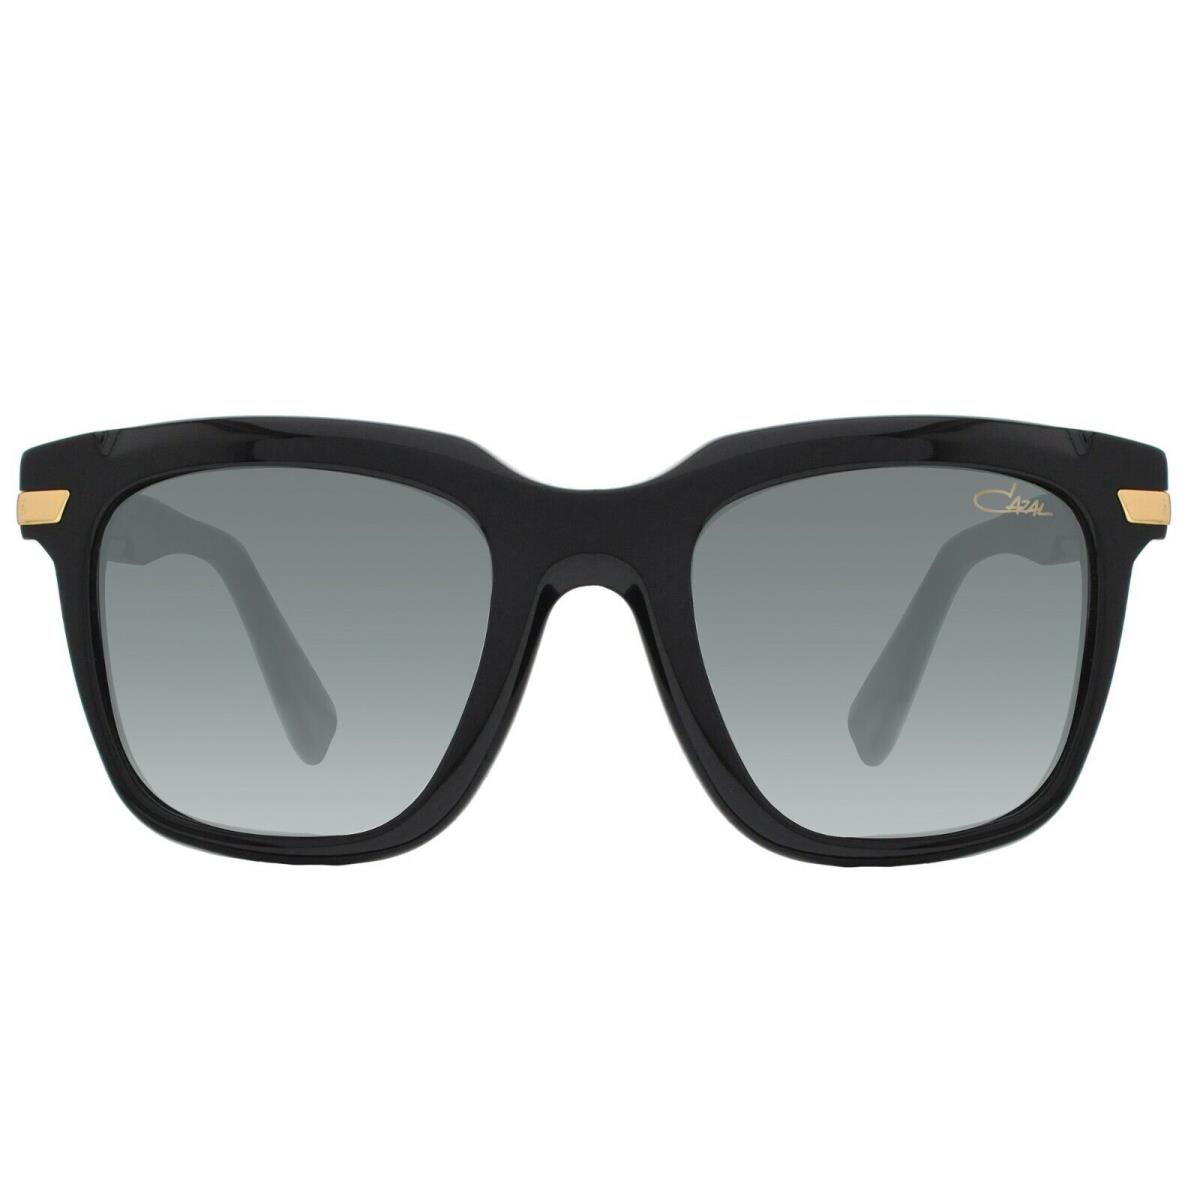 Cazal 8501 Shiny Black/grey Shaded 001 Sunglasses